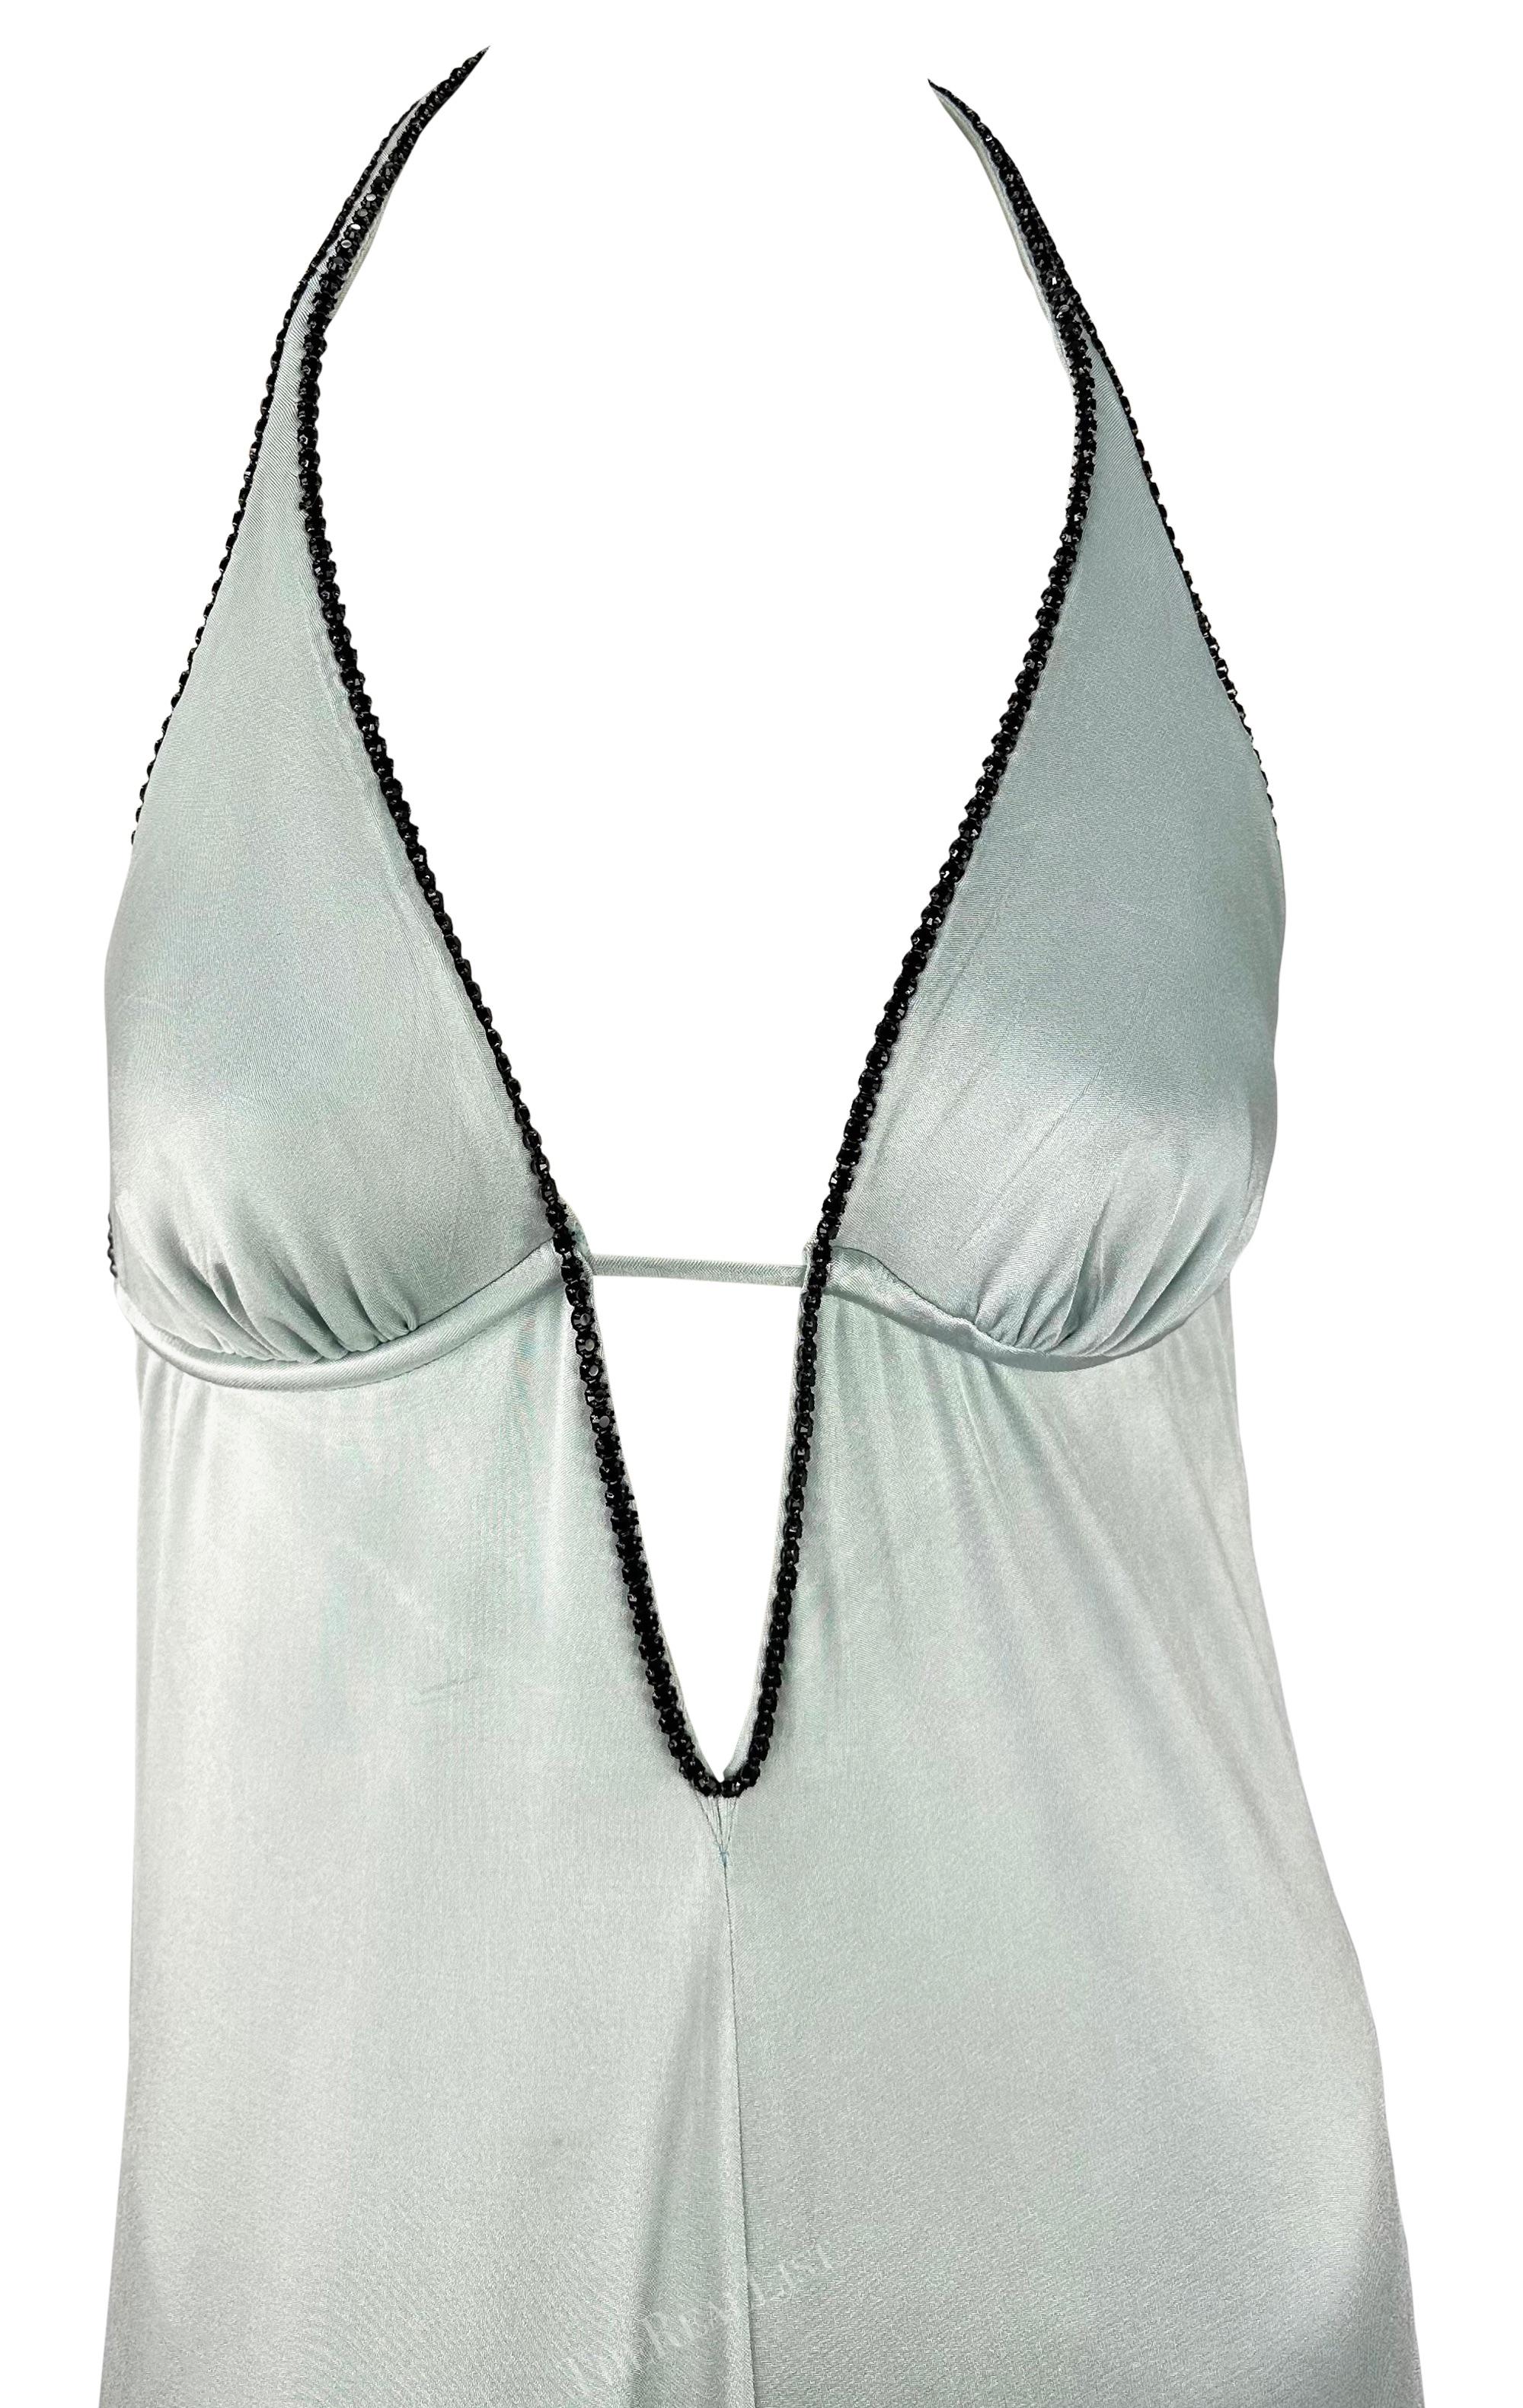 Dieses Neckholder-Kleid aus der Frühjahr/Sommer-Kollektion 2000 von Paco Rabanne ist aus glänzendem hellblauem Satin gefertigt. Es ist ein auffallend sinnliches Kleid mit tiefem Ausschnitt und freiliegendem Rücken, beides verziert mit glatten